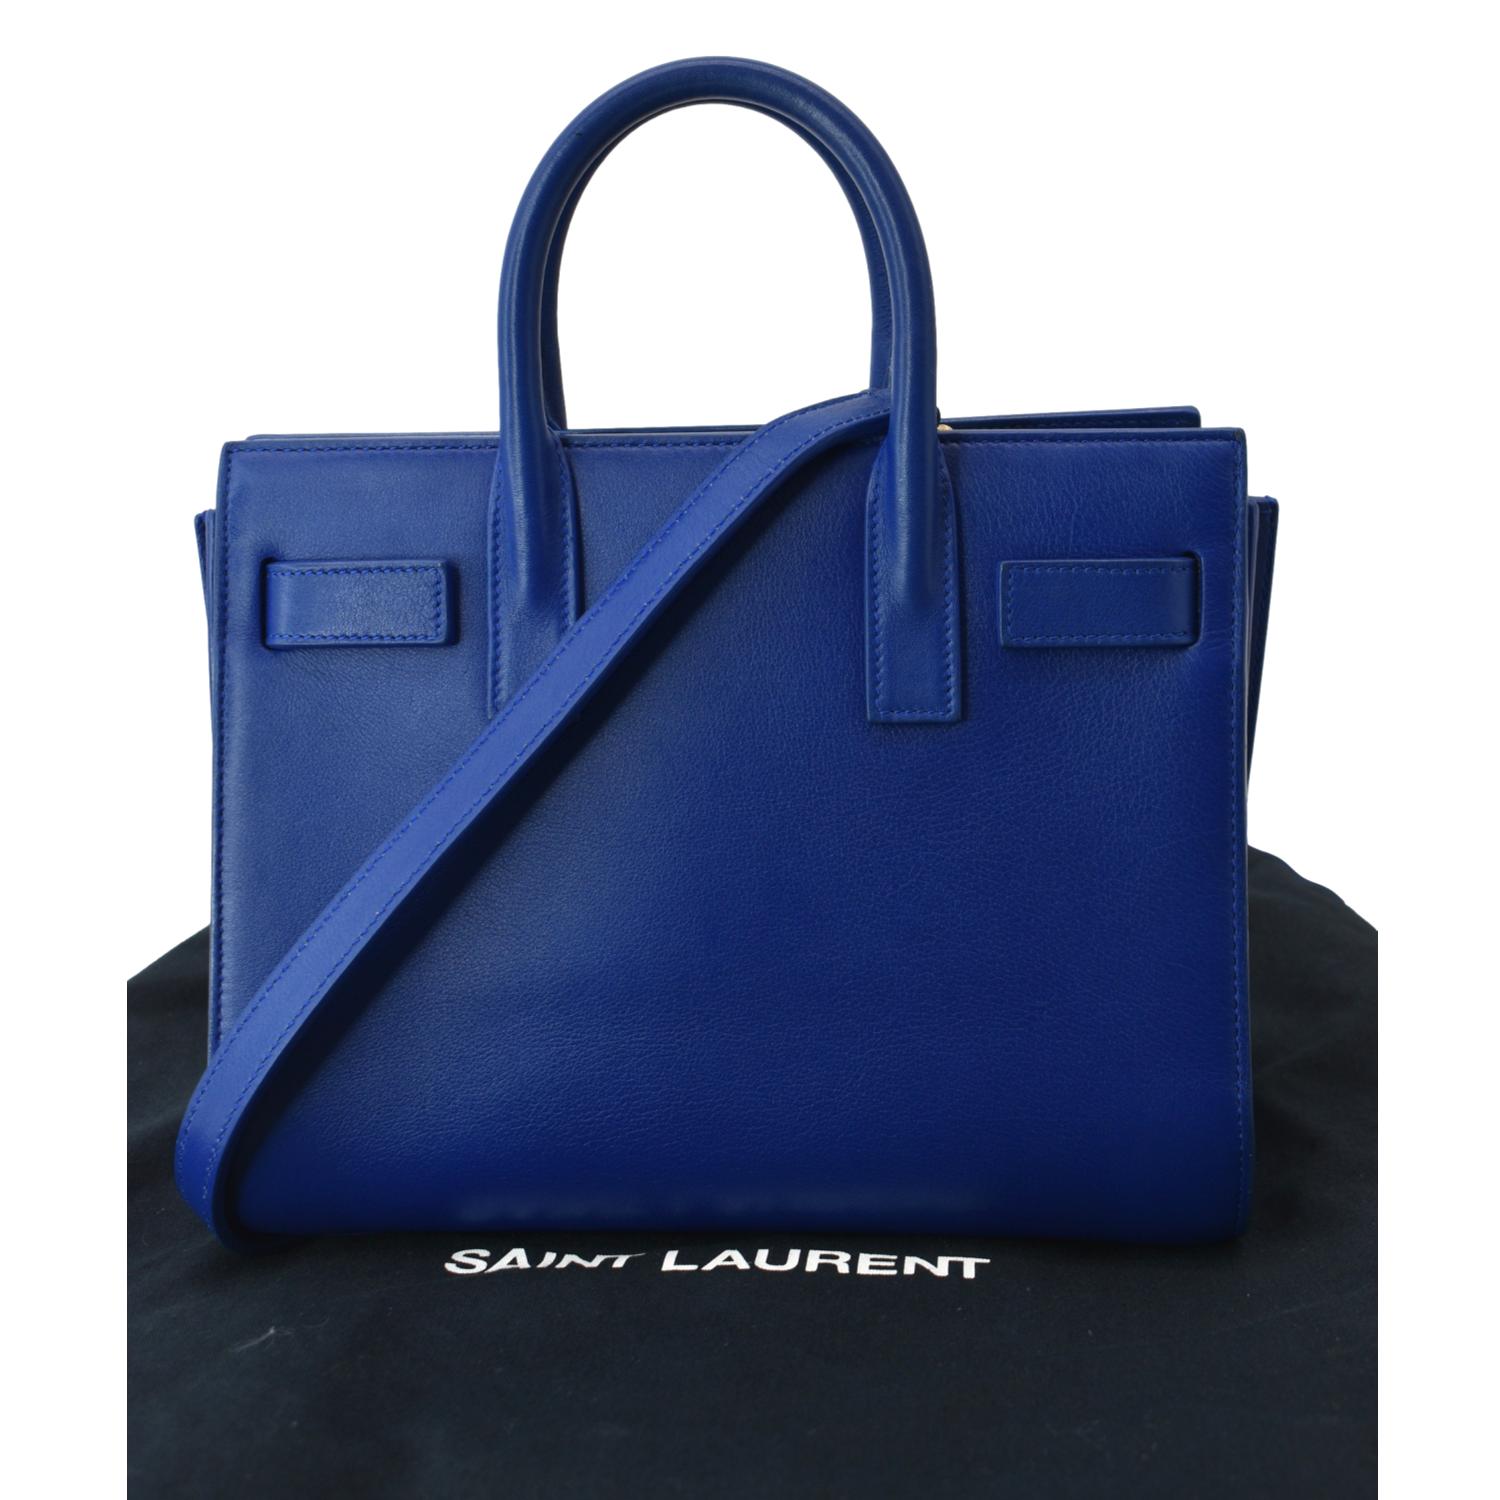 Yves Saint Laurent Sac de Jour Leather Shoulder Bag